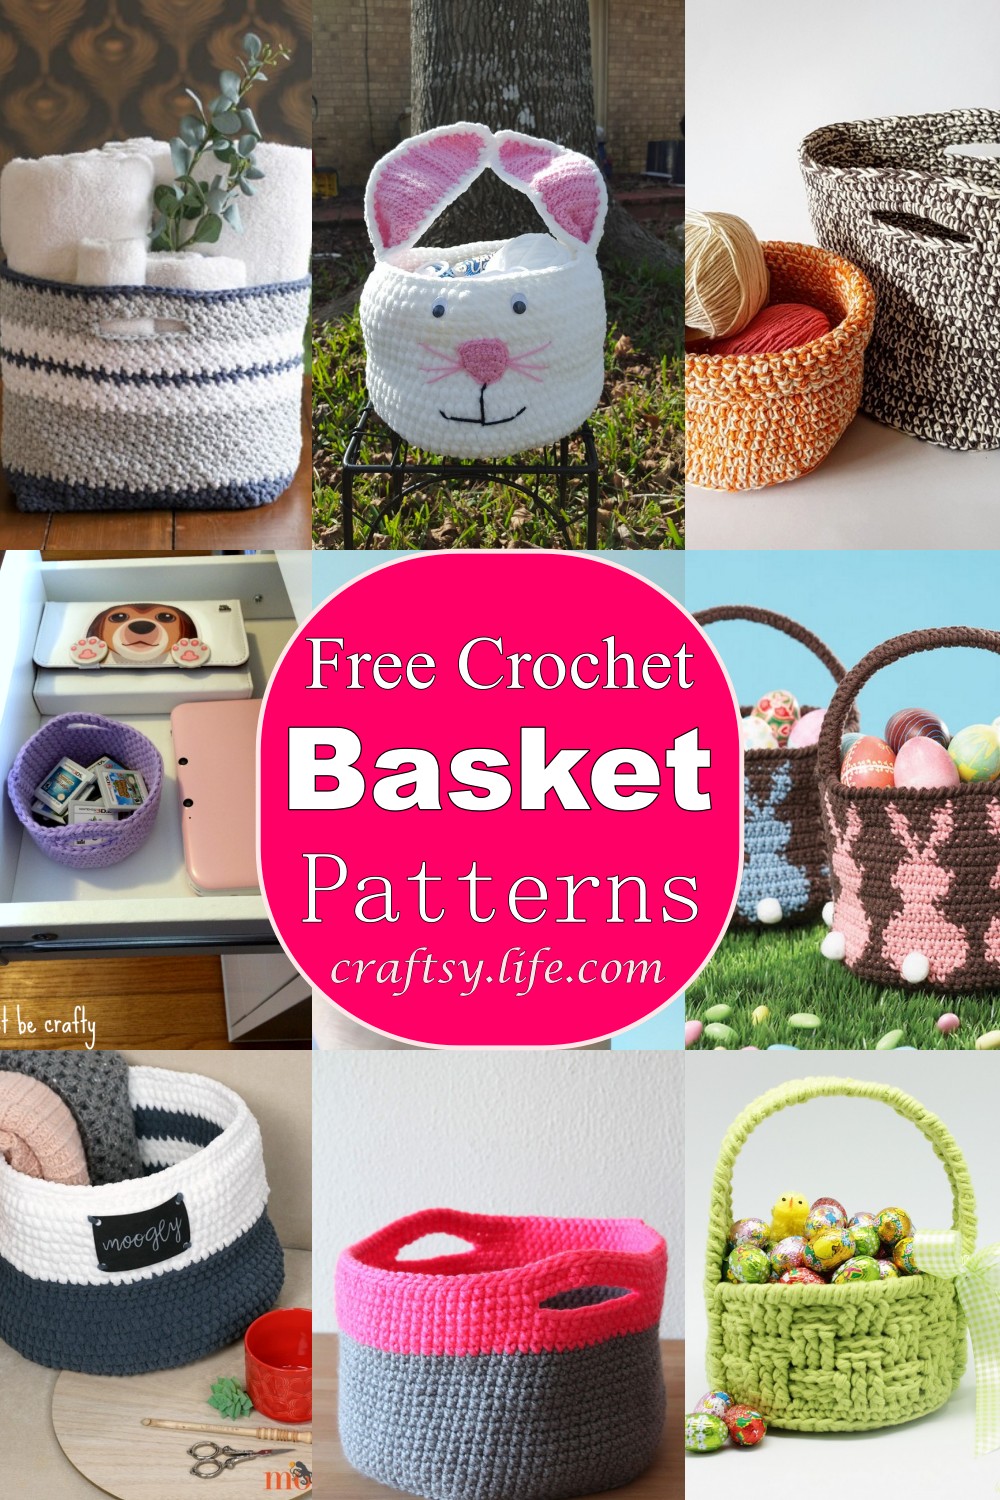 crochet basket decorative basket storage basket handmade basket bathroom basket small basket kitchen basket Crochet basket with cover